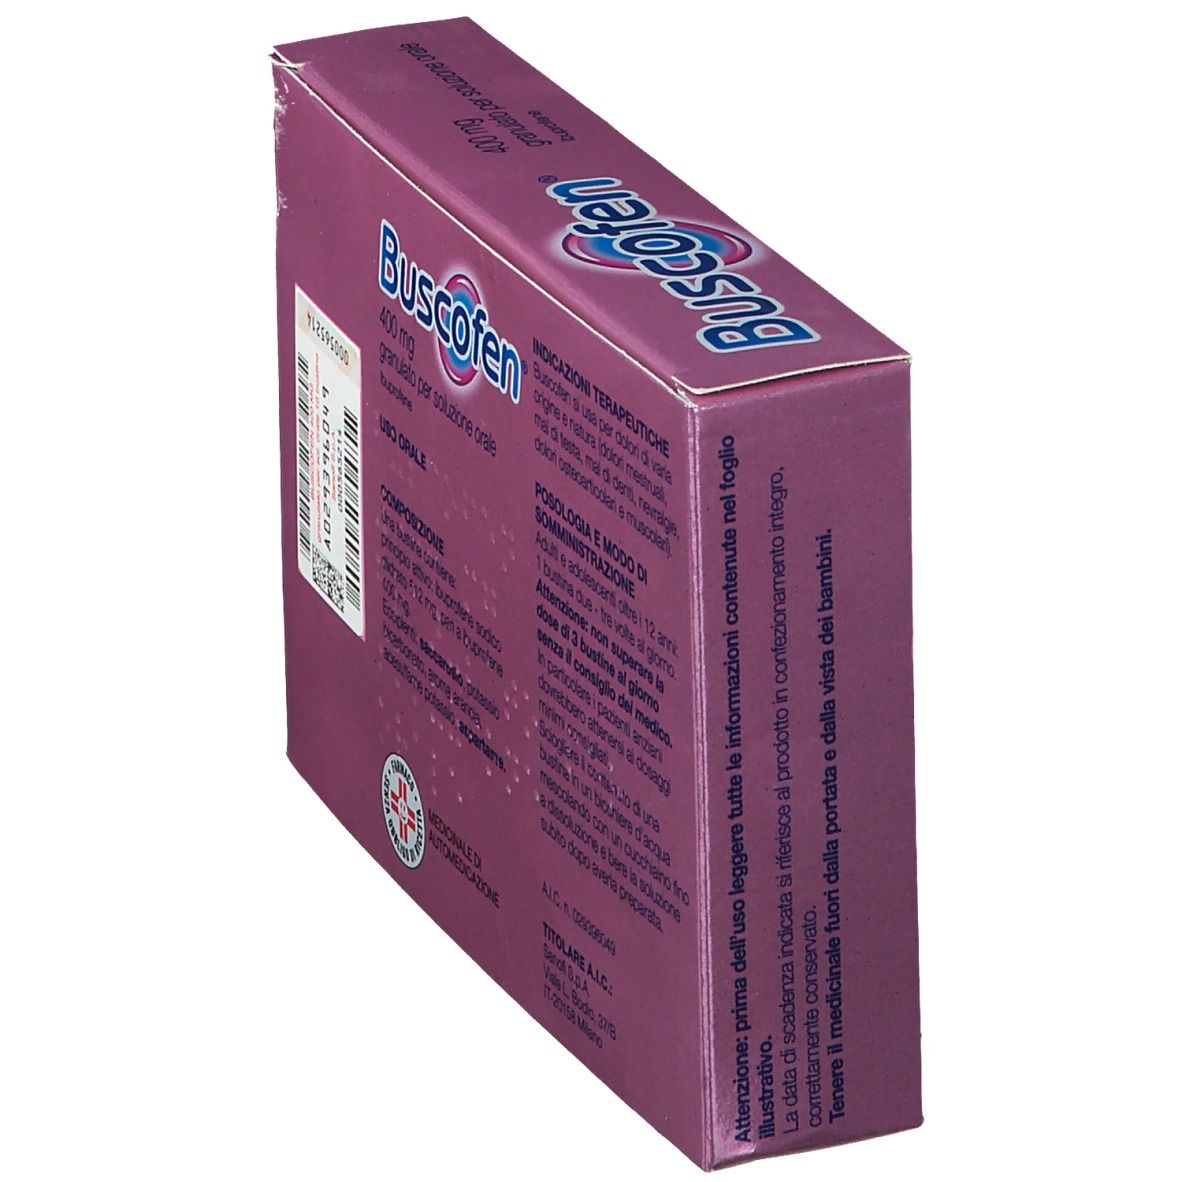 Buscofen® Granulato per soluzione orale